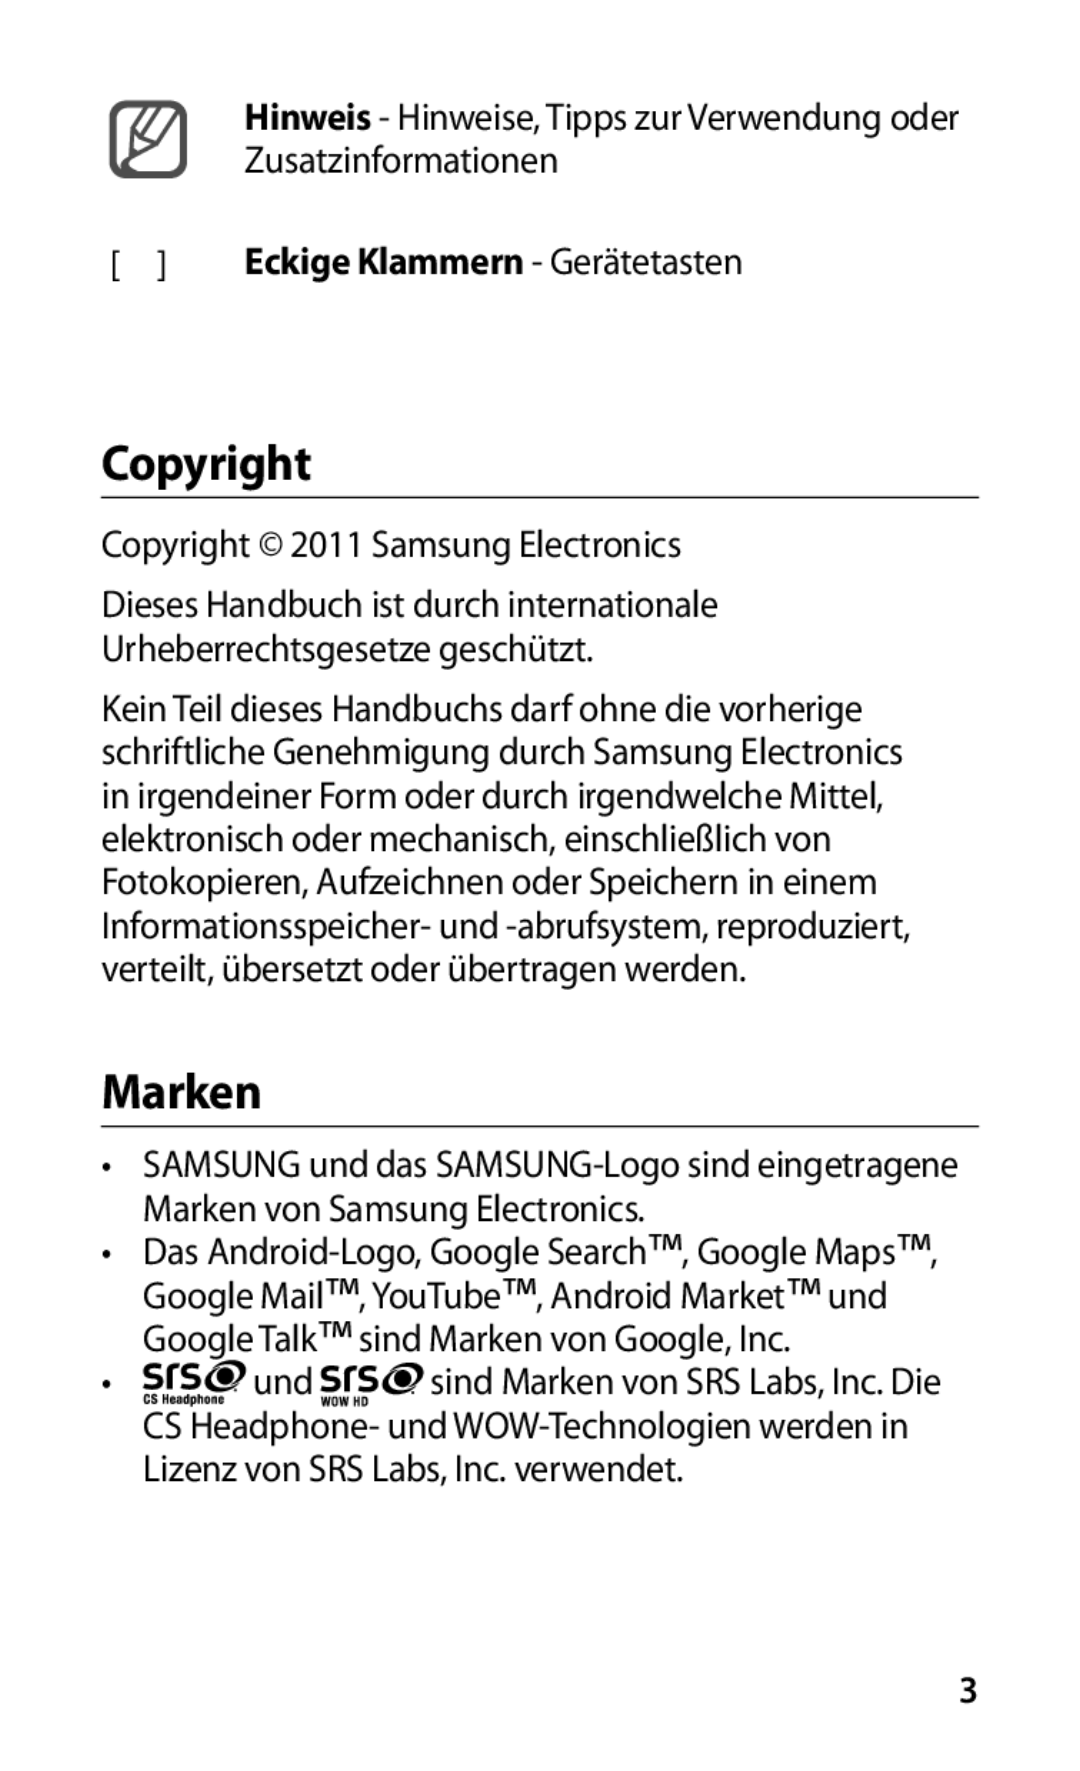 Samsung GT-I9000HKYEUR manual Copyright, Marken, Hinweis - Hinweise, Tipps zur Verwendung oder Zusatzinformationen 